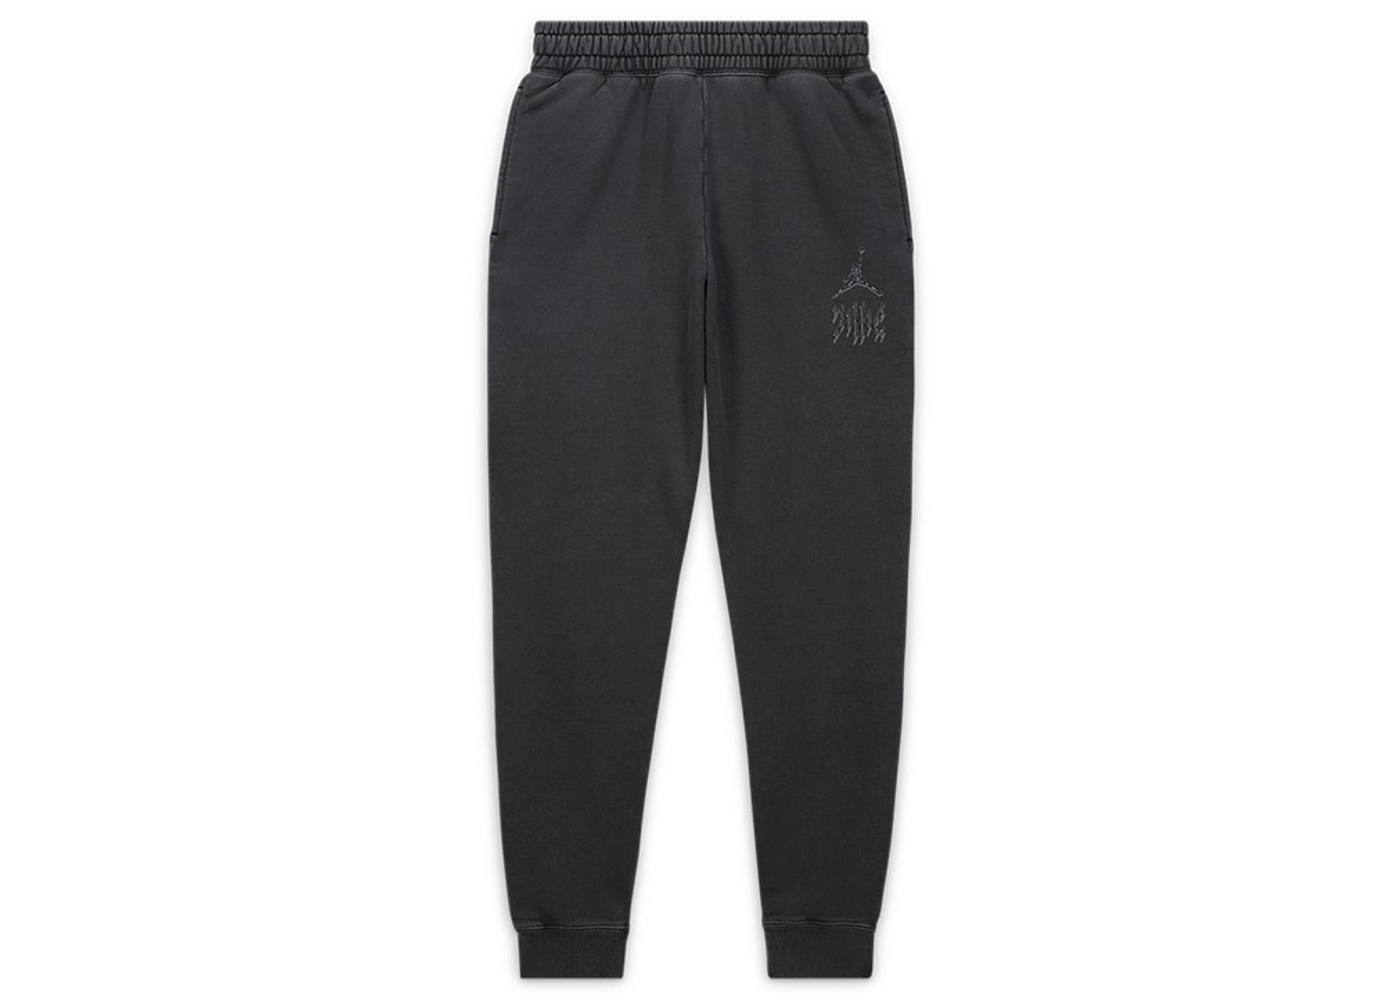 Mens Jordan Pants/Joggers | Jordans for men, Pants joggers, Clothes design